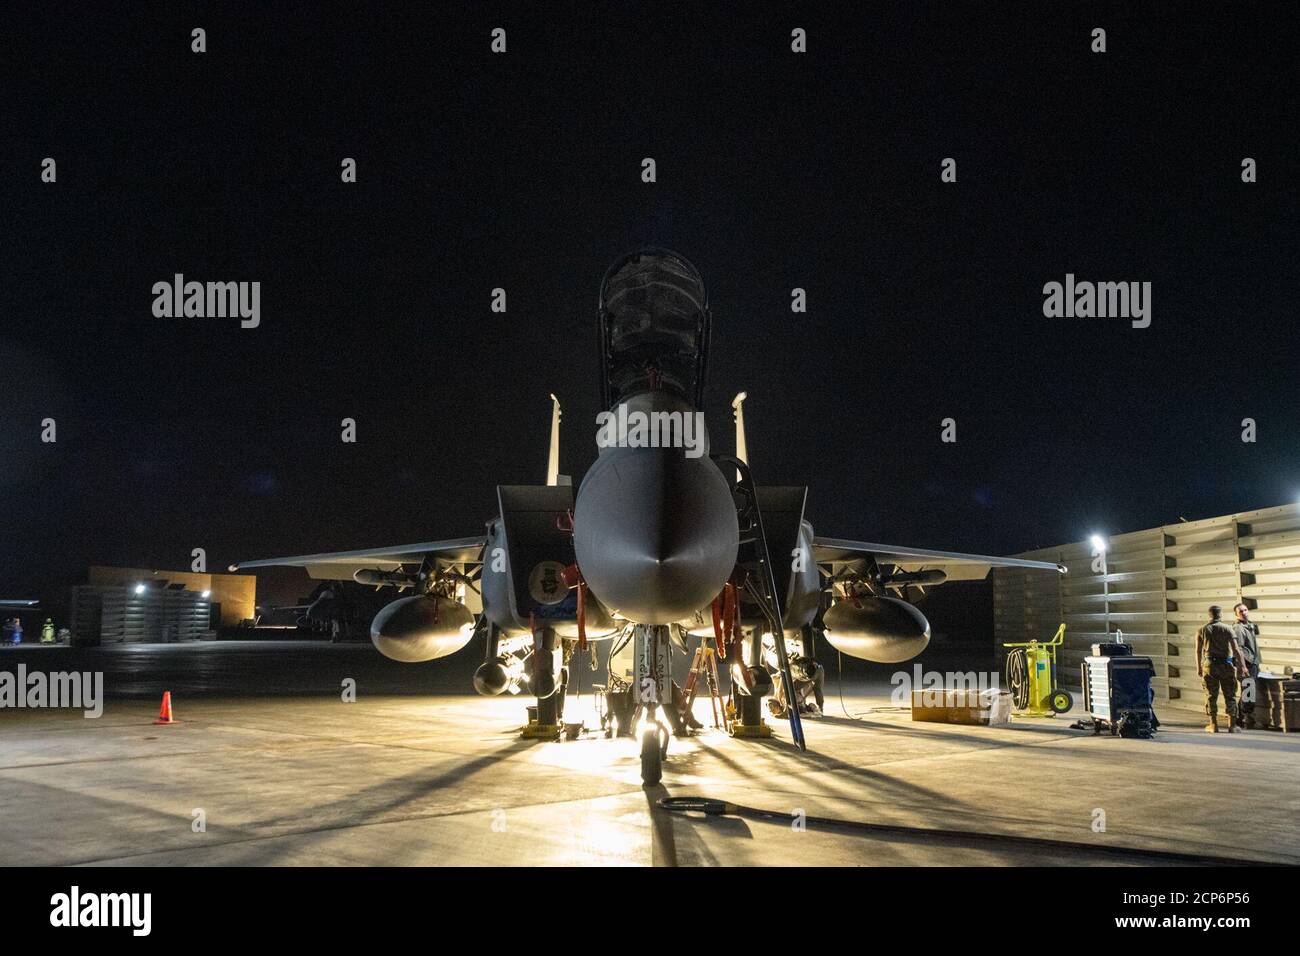 Die Betreuer, die im 332d Air Expeditionary Wing eingesetzt werden, arbeiten mitten in der Nacht, um sicherzustellen, dass die F-15 Strike Eagle für ihre nächste Mission bereit ist. Betreuer sichern den Erfolg der Mission, indem sie Flugzeuge in der Luft halten. (USA Foto der Air National Guard von Meister Sgt. Jonathan Young) Stockfoto